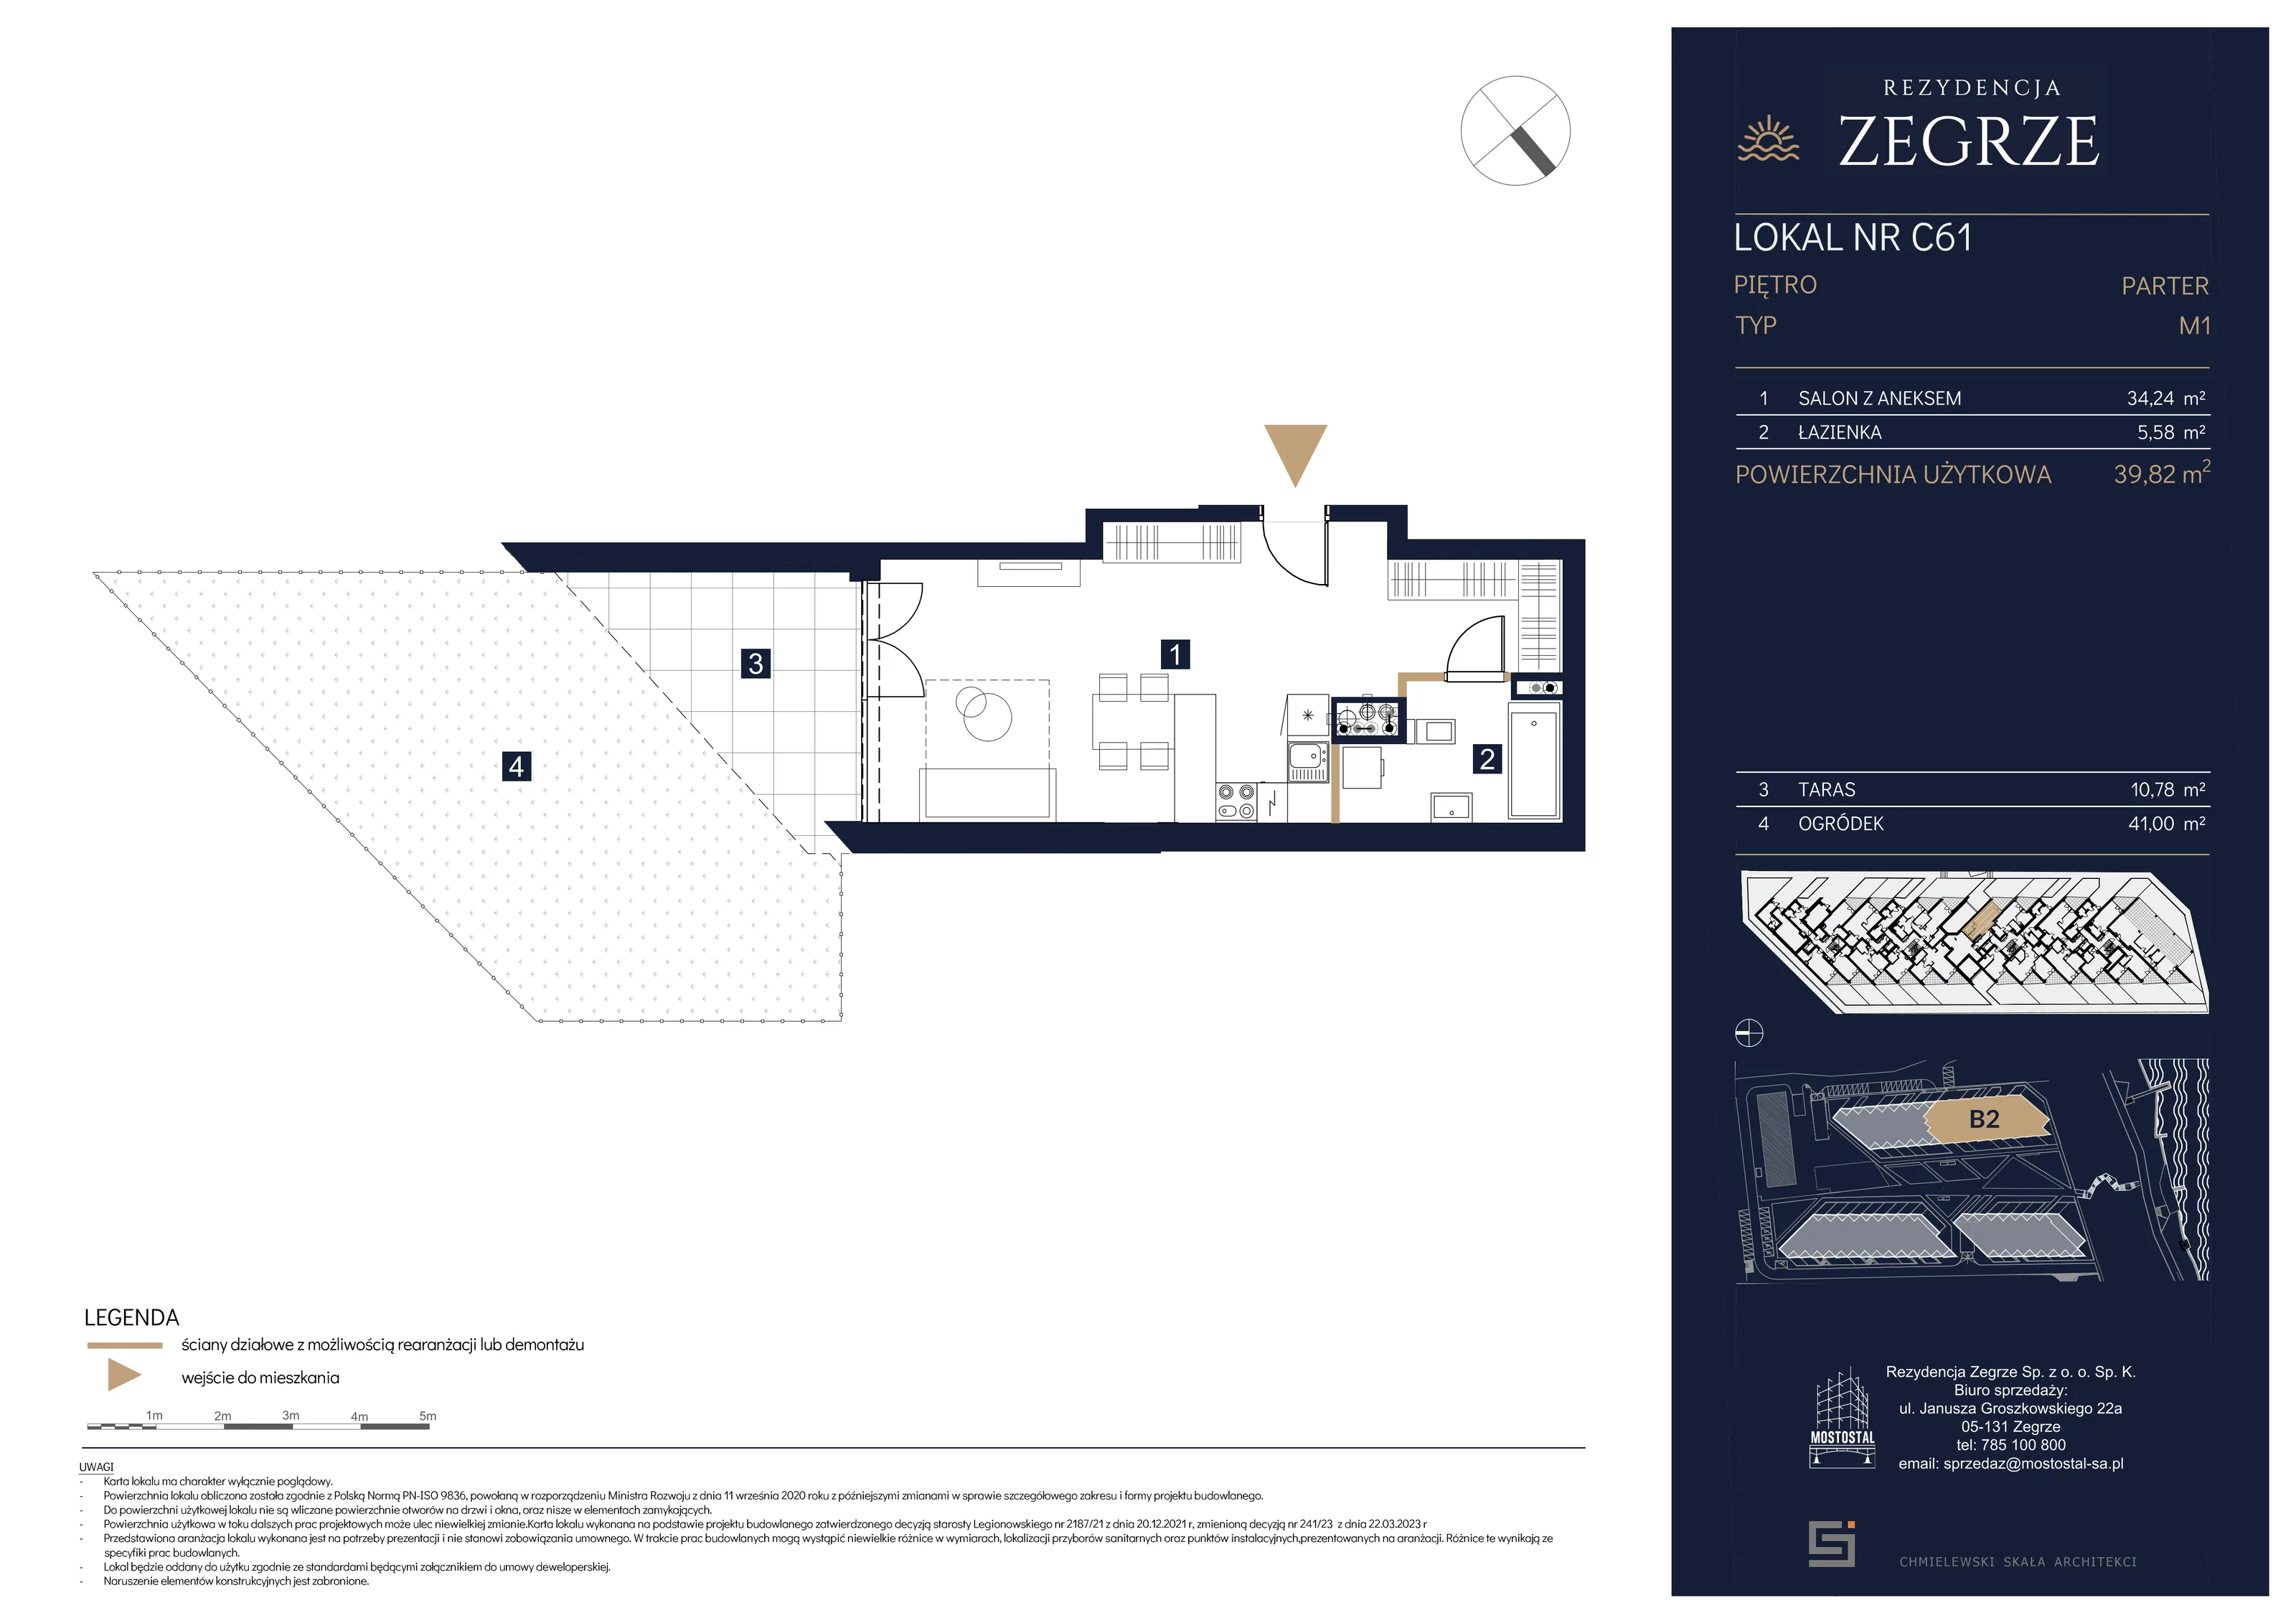 Mieszkanie 39,82 m², parter, oferta nr B2.1.C.61, Rezydencja Zegrze II, Zegrze, ul. Groszkowskiego 22A